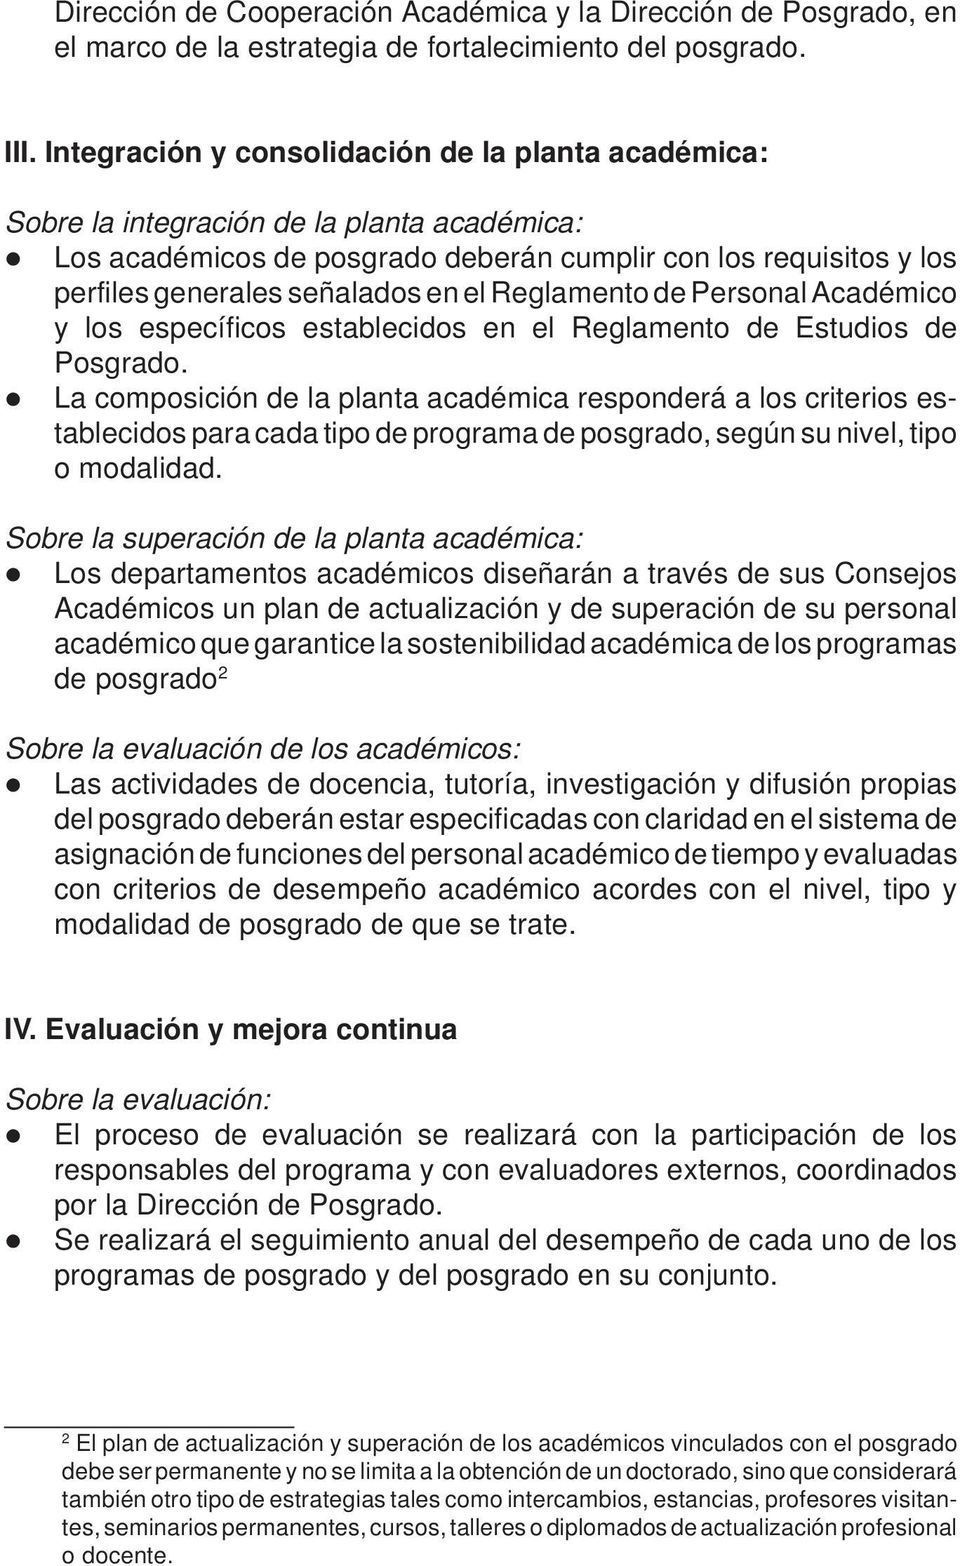 Reglamento de Personal Académico y los específicos establecidos en el Reglamento de Estudios de Posgrado.